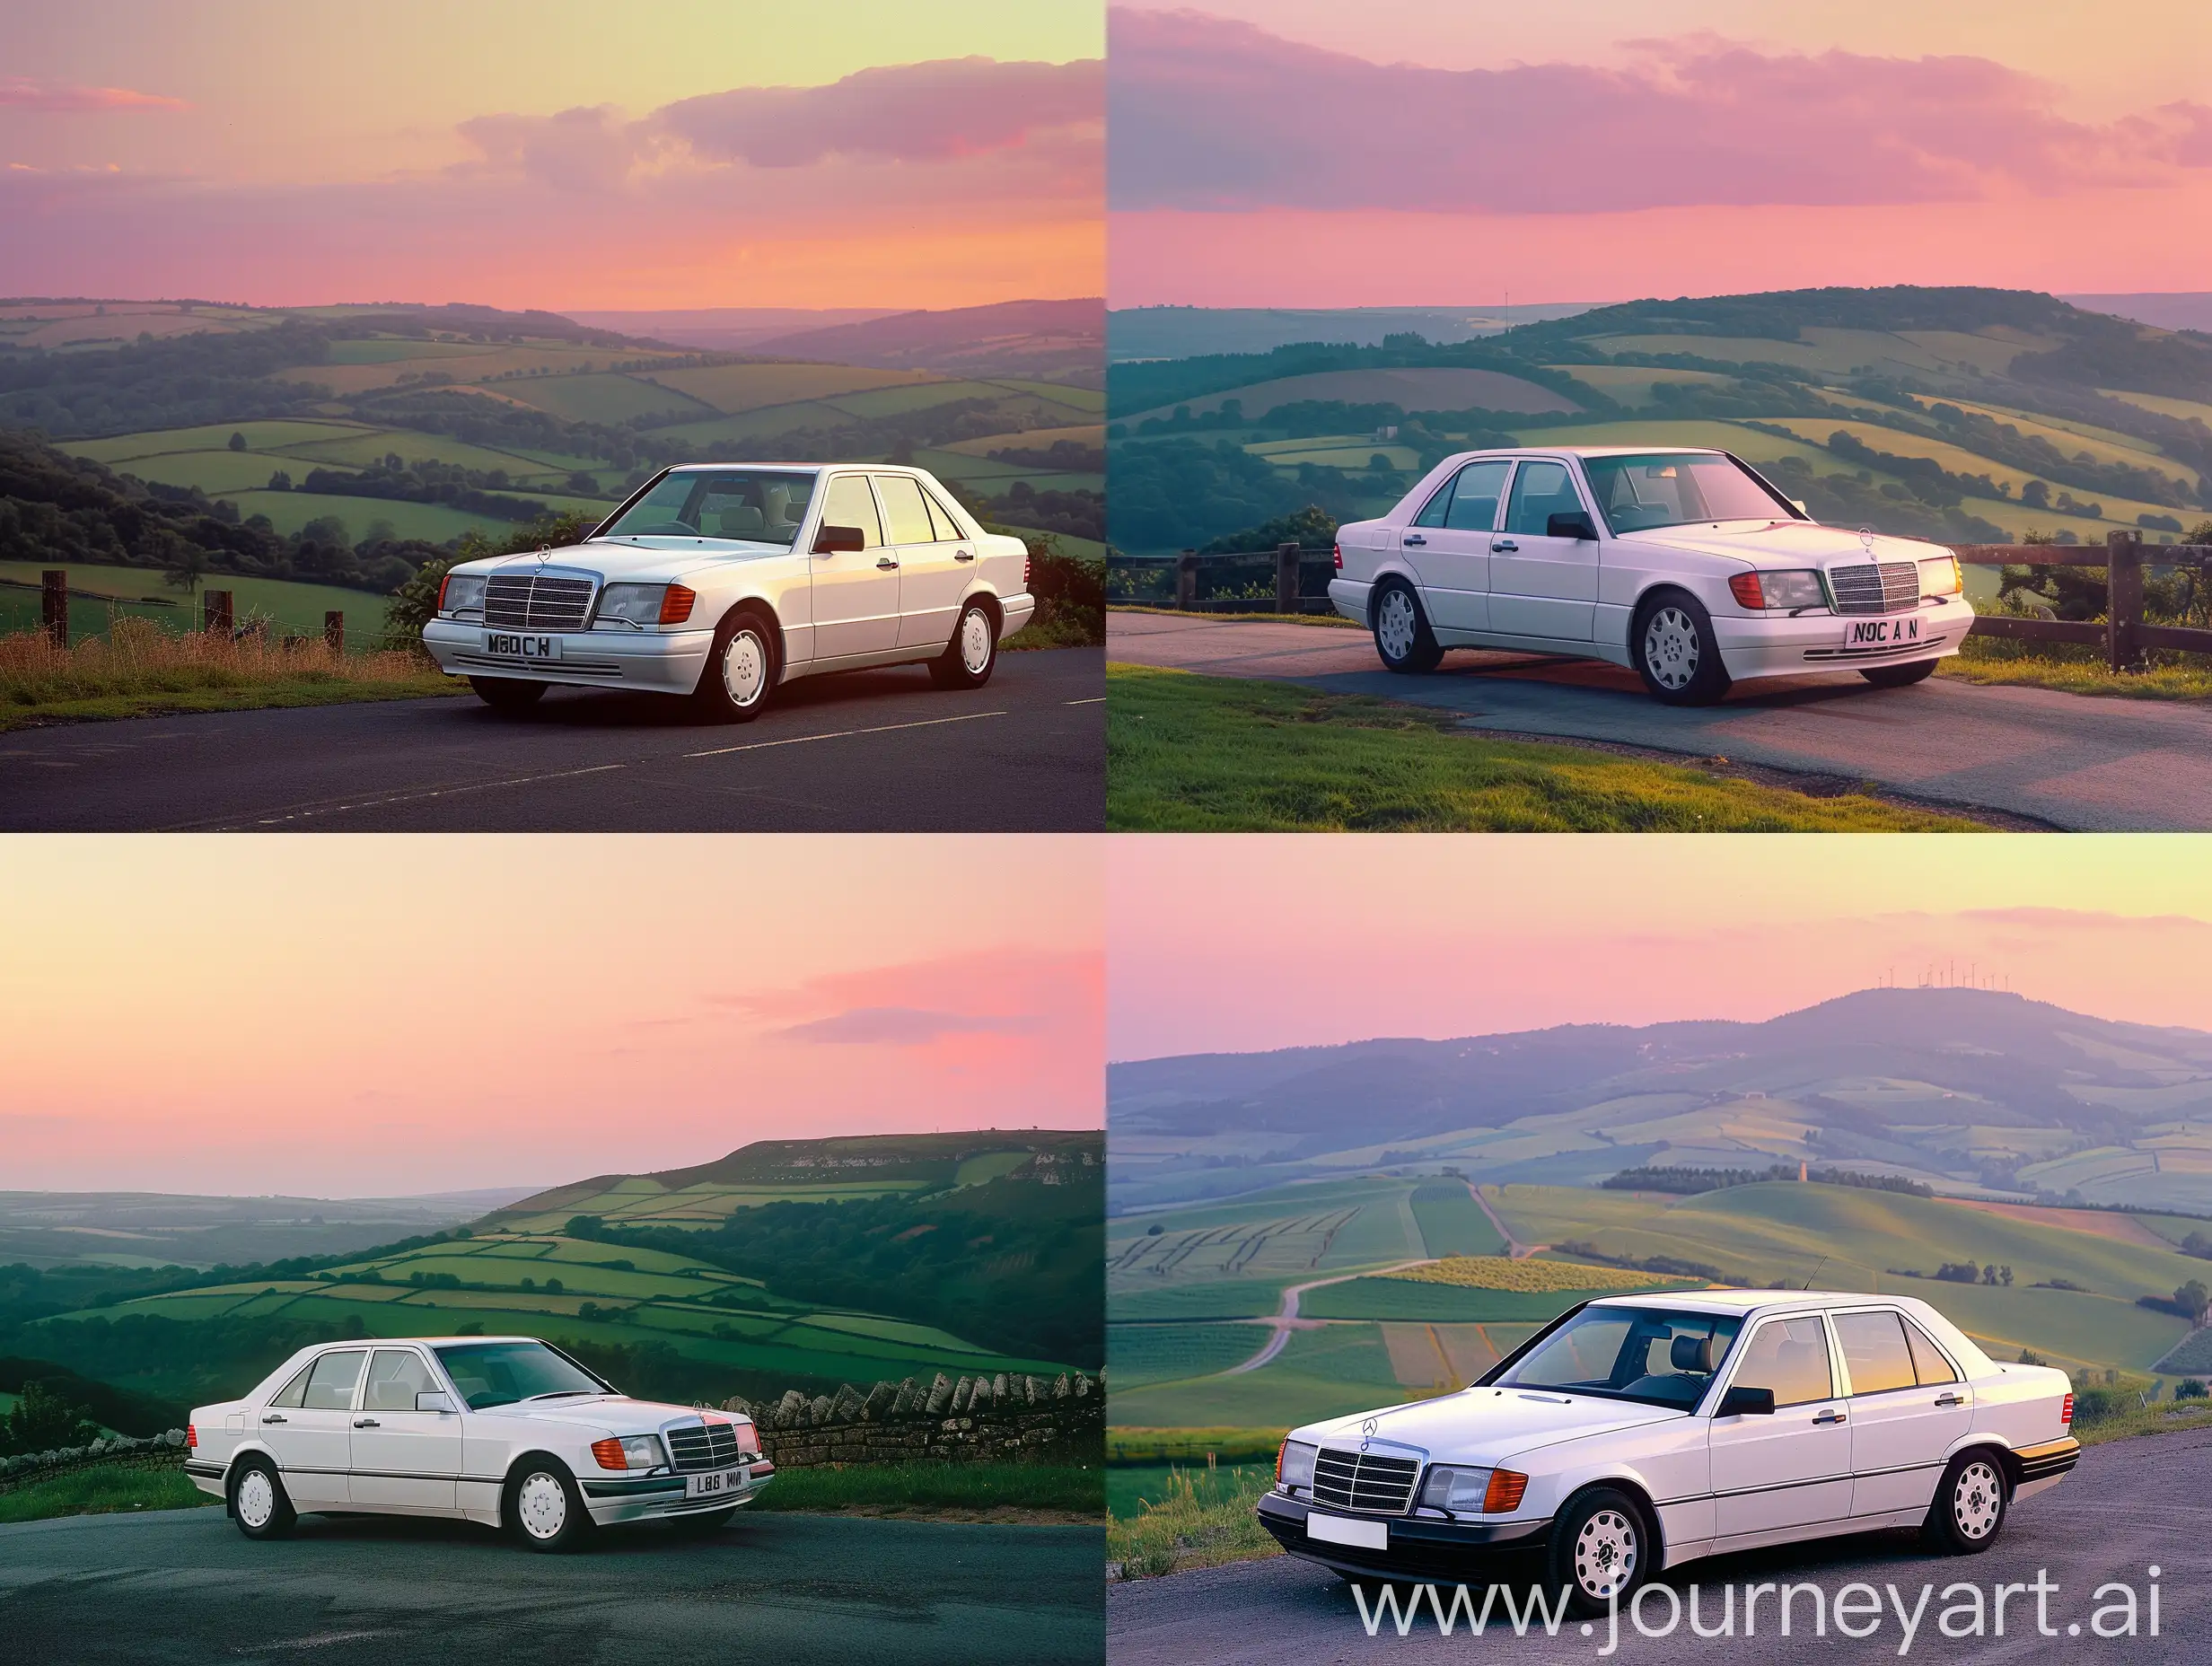 Рекламный цветной фото плакат: автомобиль Мерседес 1990 года производства, седан, белого цвета стоит на загородной дороге, на фоне летнего зелёного холмистого пейзажа в вечернее время, в лучах розового заката.